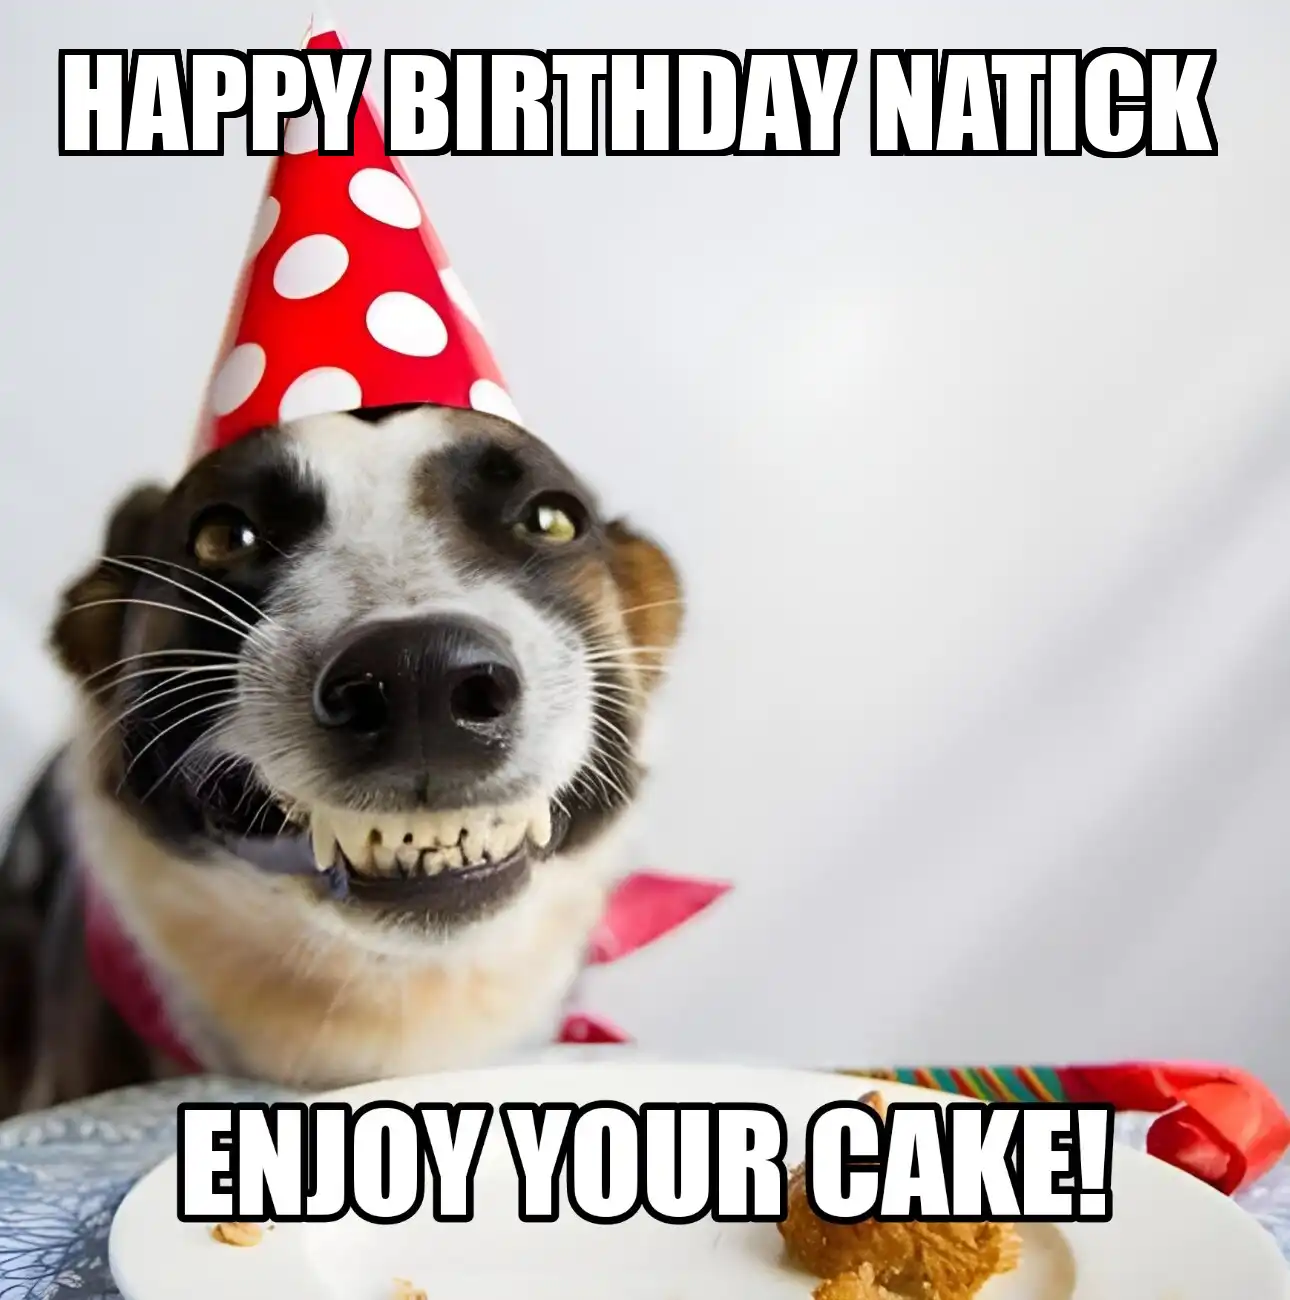 Happy Birthday Natick Enjoy Your Cake Dog Meme